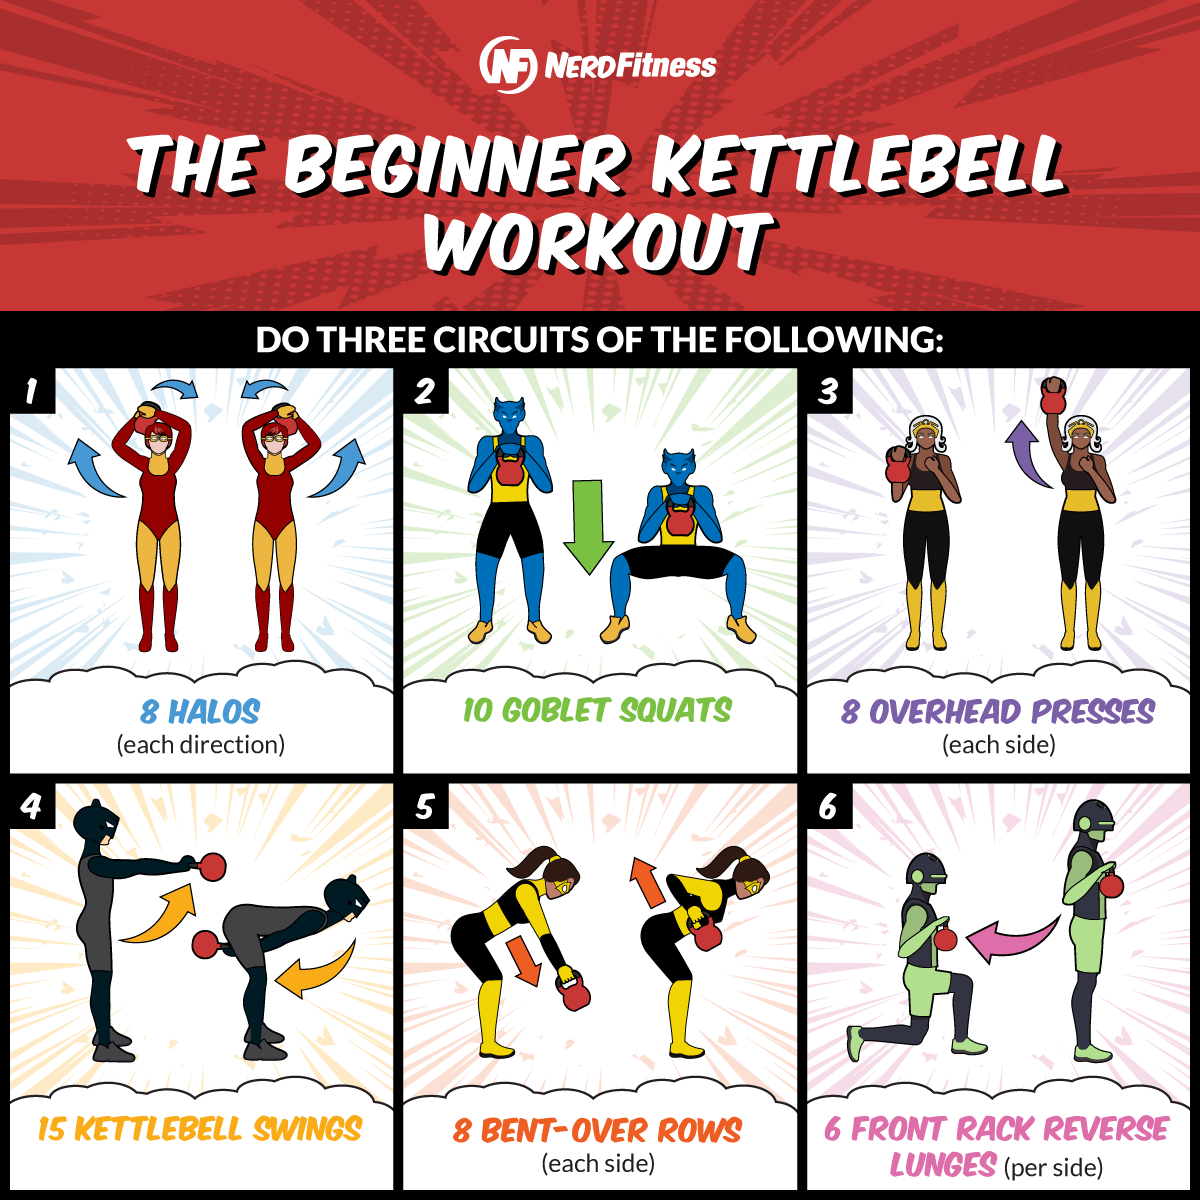 Cette infographie présente les 6 exercices nécessaires à la séance d'entraînement aux kettlebells pour débutants